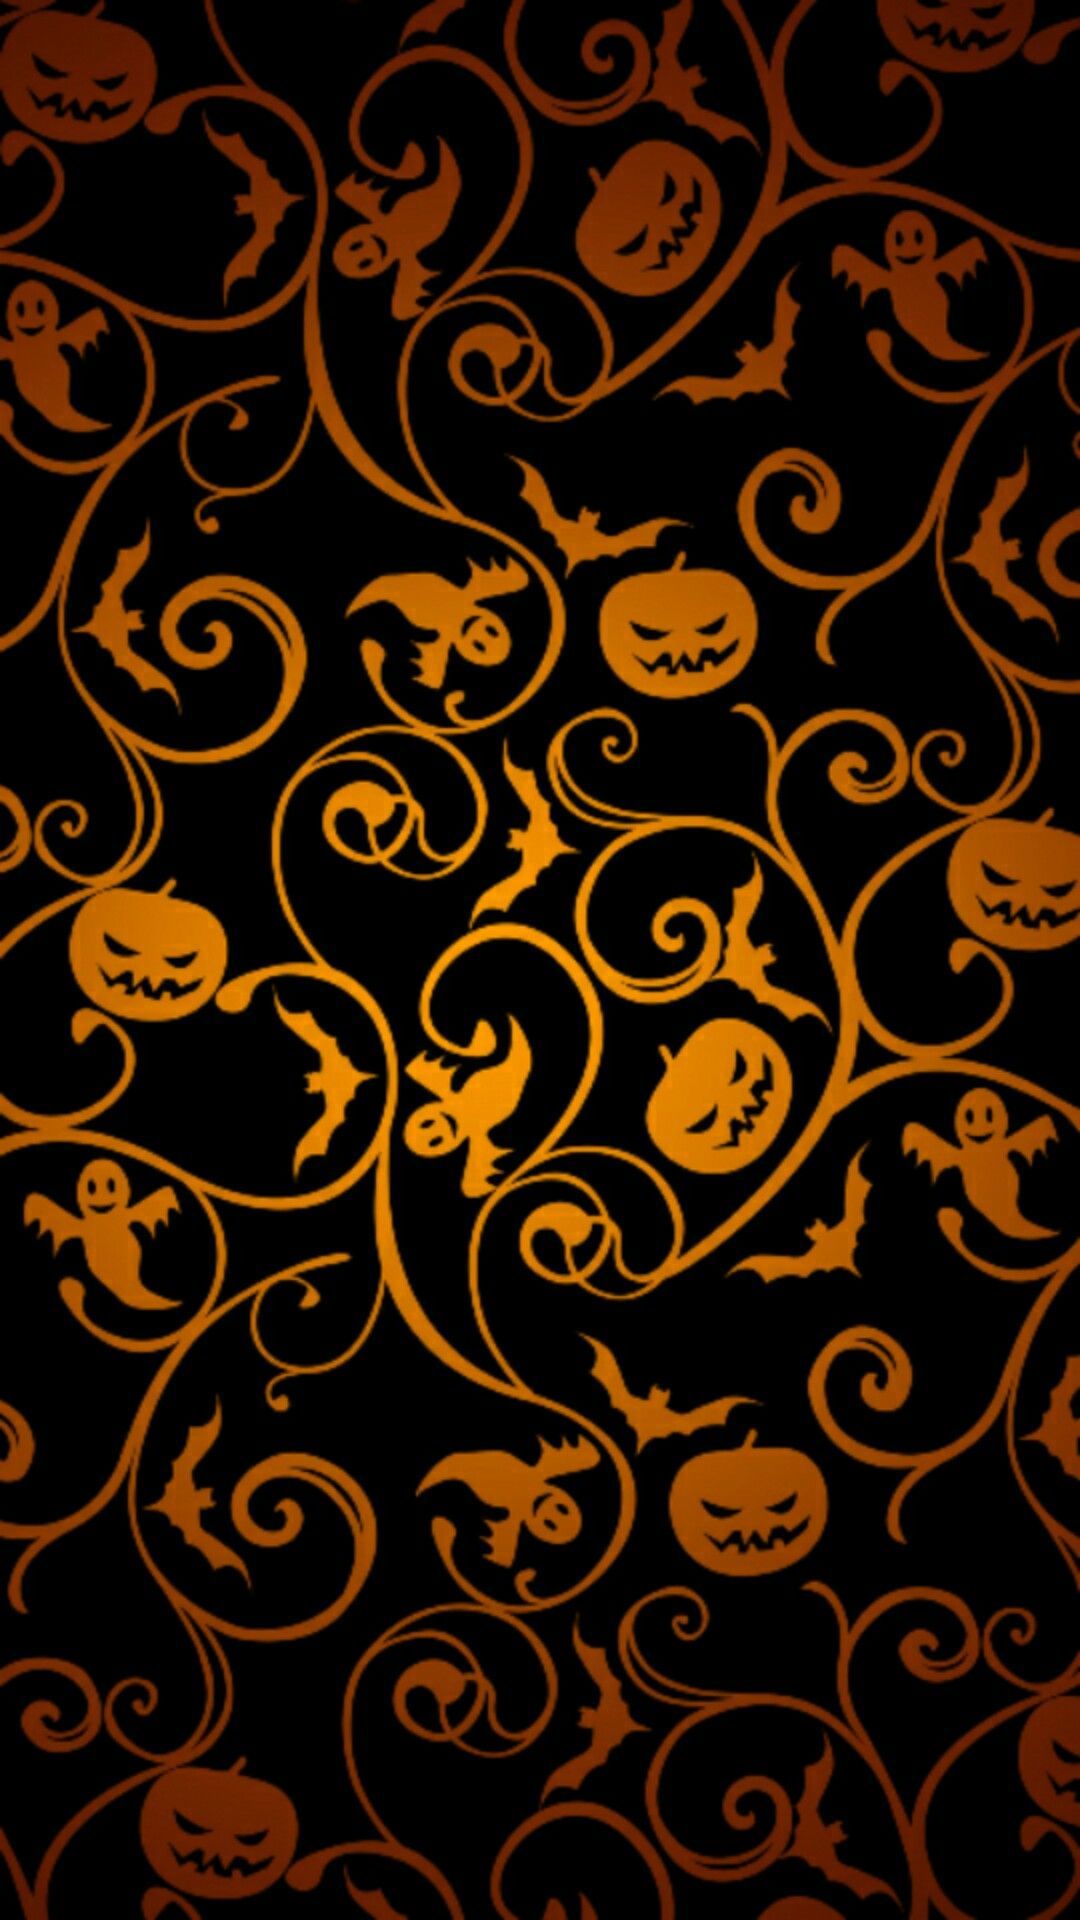 Halloween pumpkin vines, ghosts, bats cellphone wallpaper locks screen. Halloween wallpaper iphone, Halloween wallpaper, Halloween background